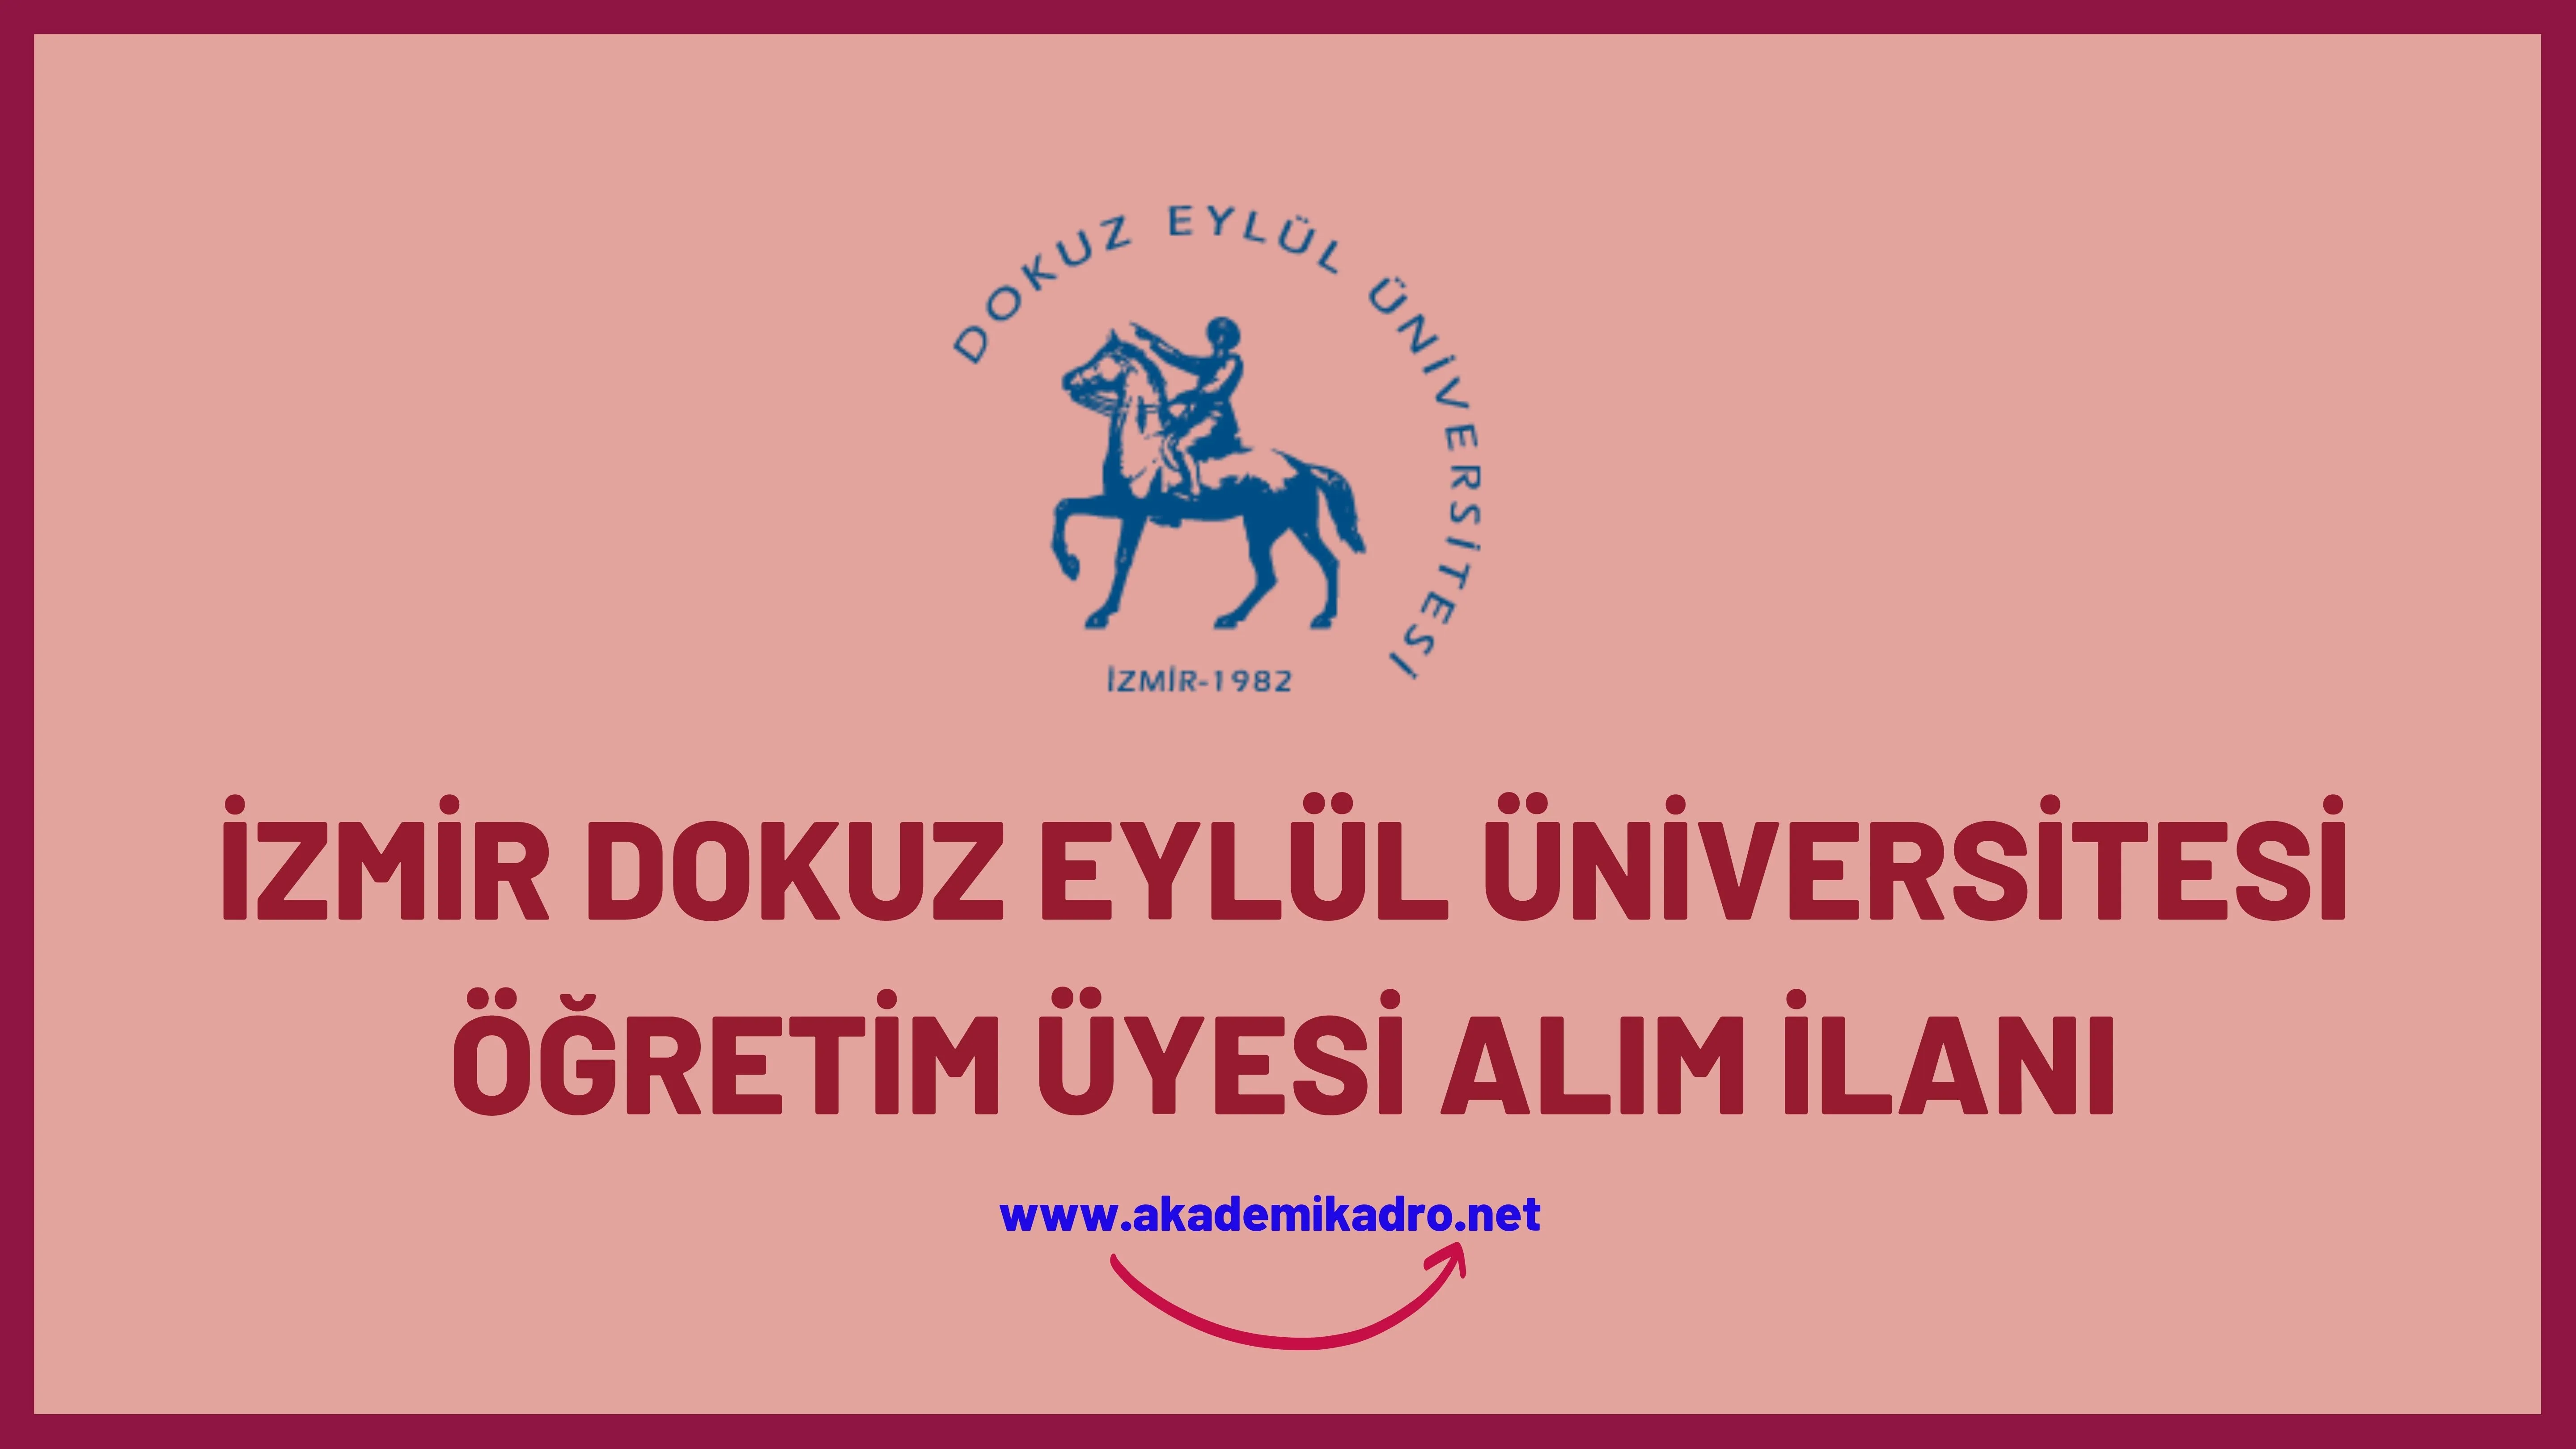 Dokuz Eylül Üniversitesi birçok alandan 60 Öğrewtim üyesi alacak. Son başvuru tarihi 22 Aralık 2022.